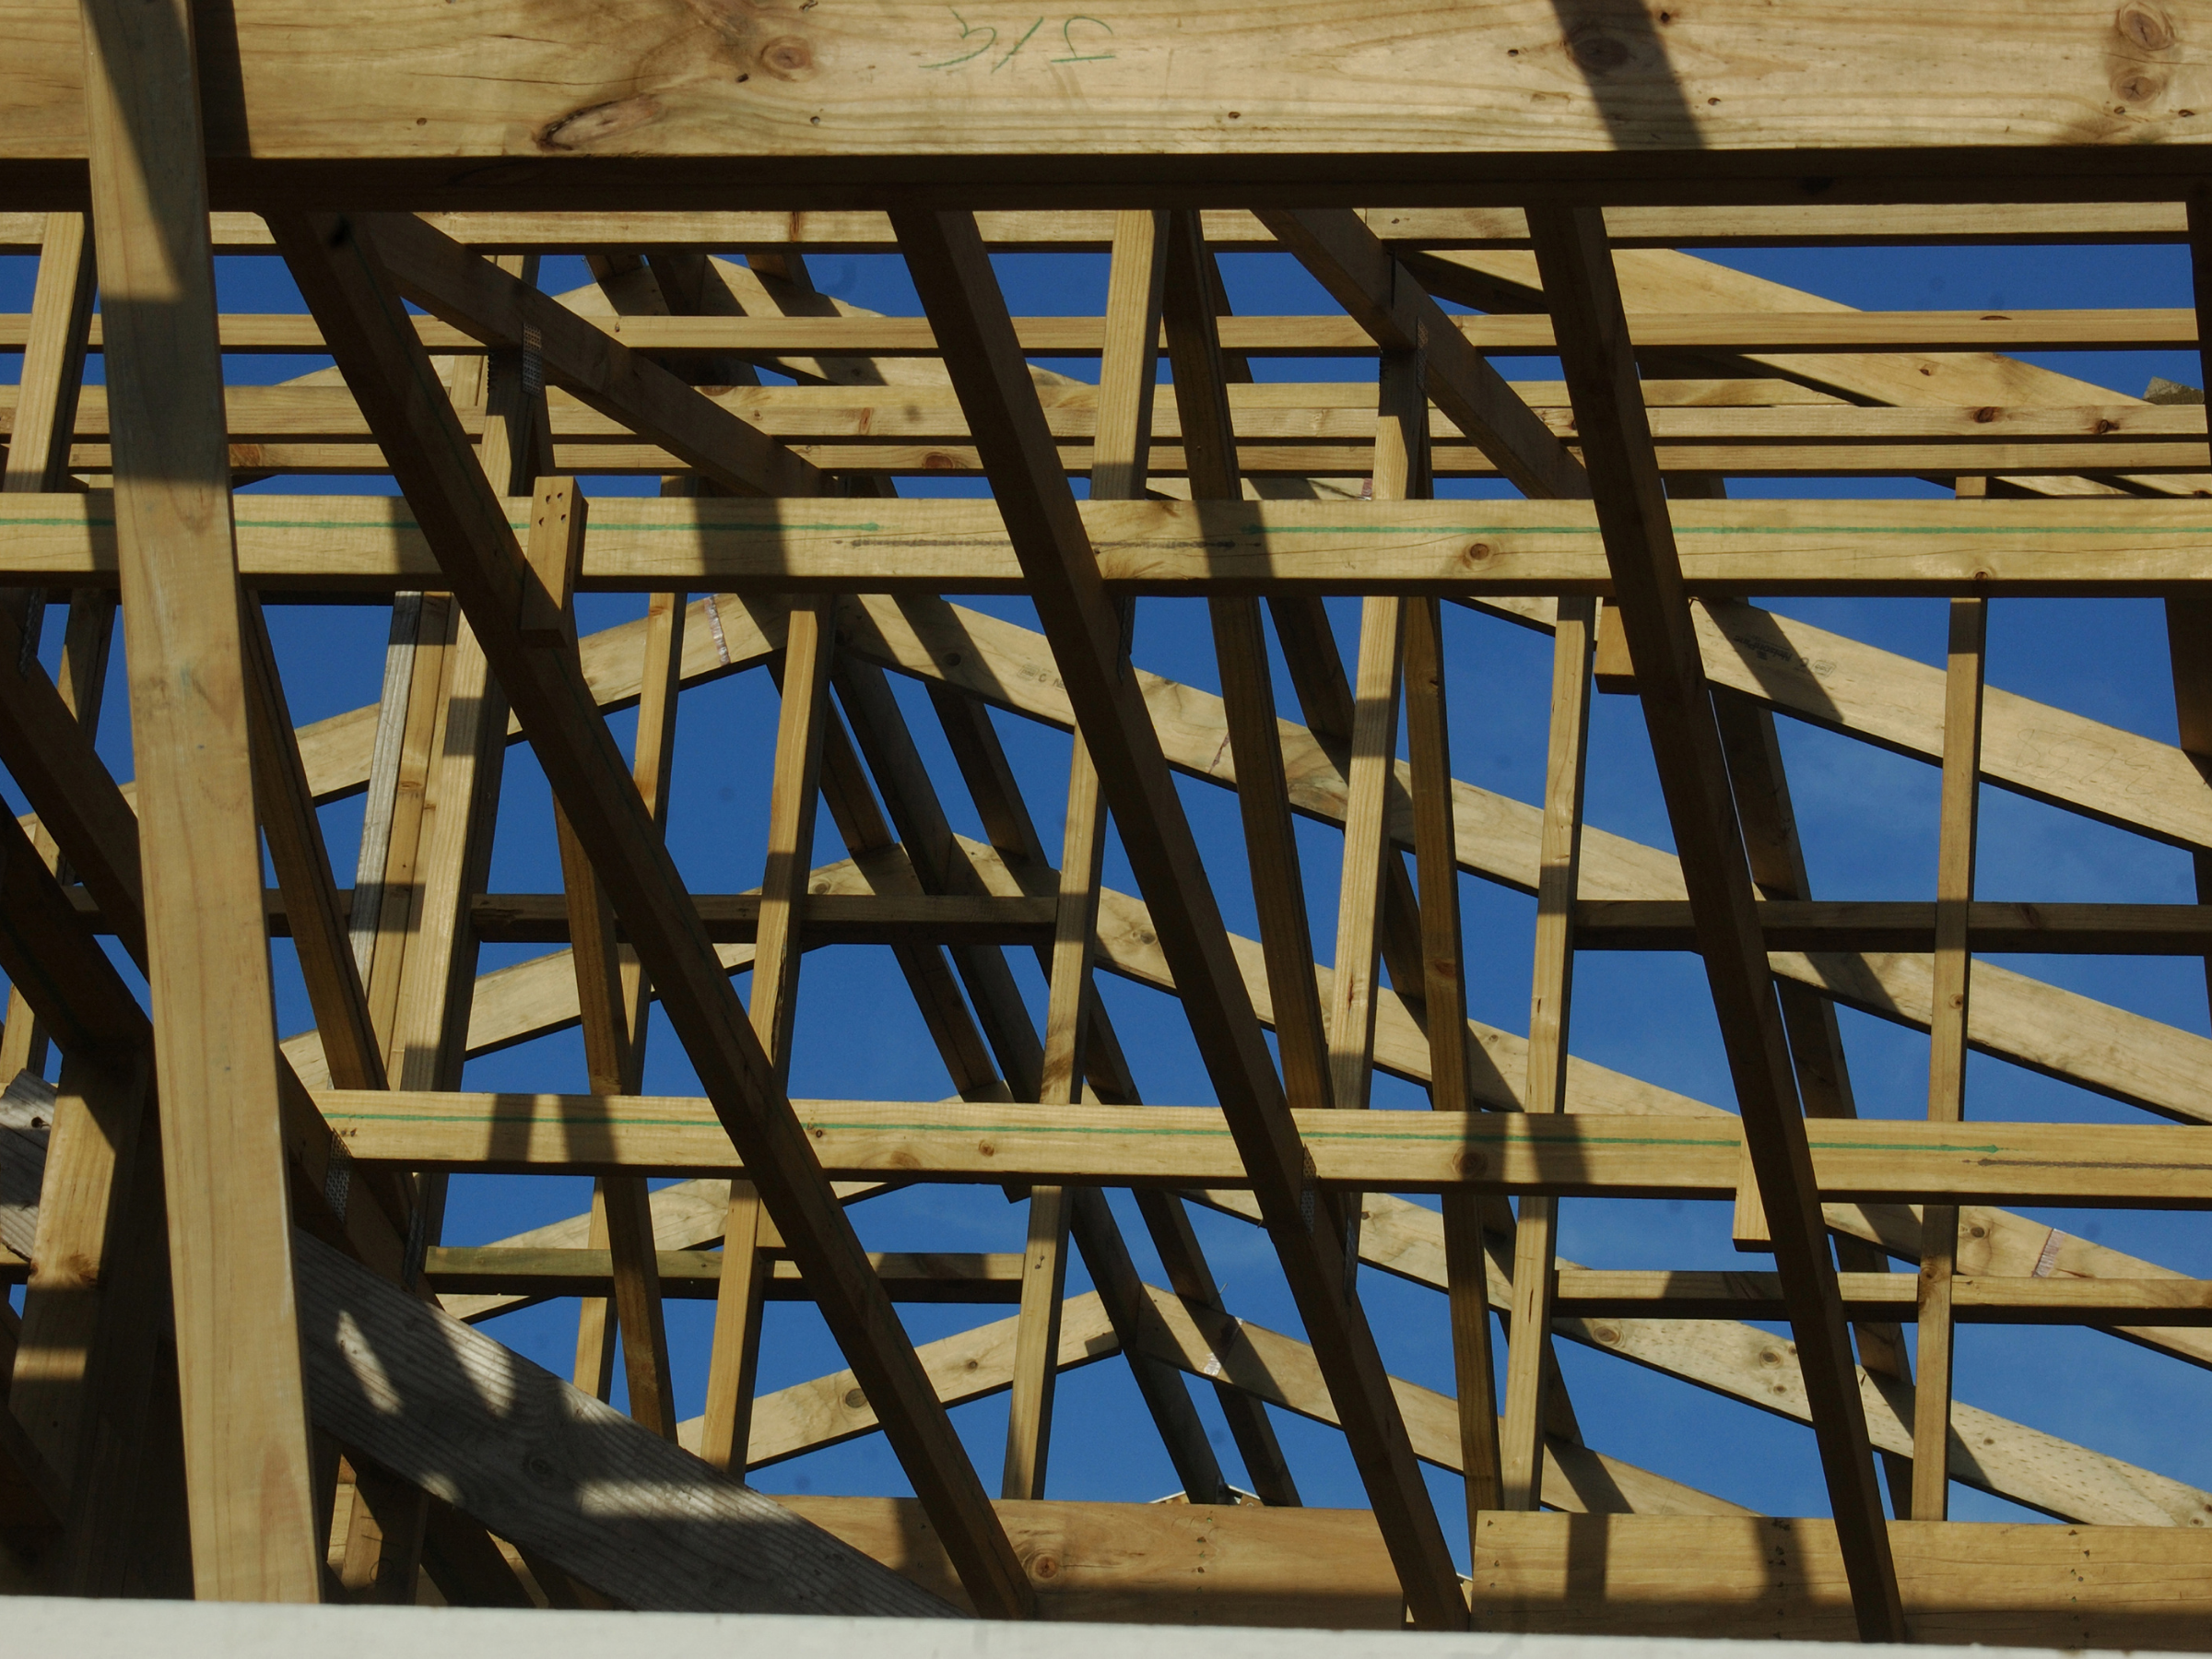 Timber framing